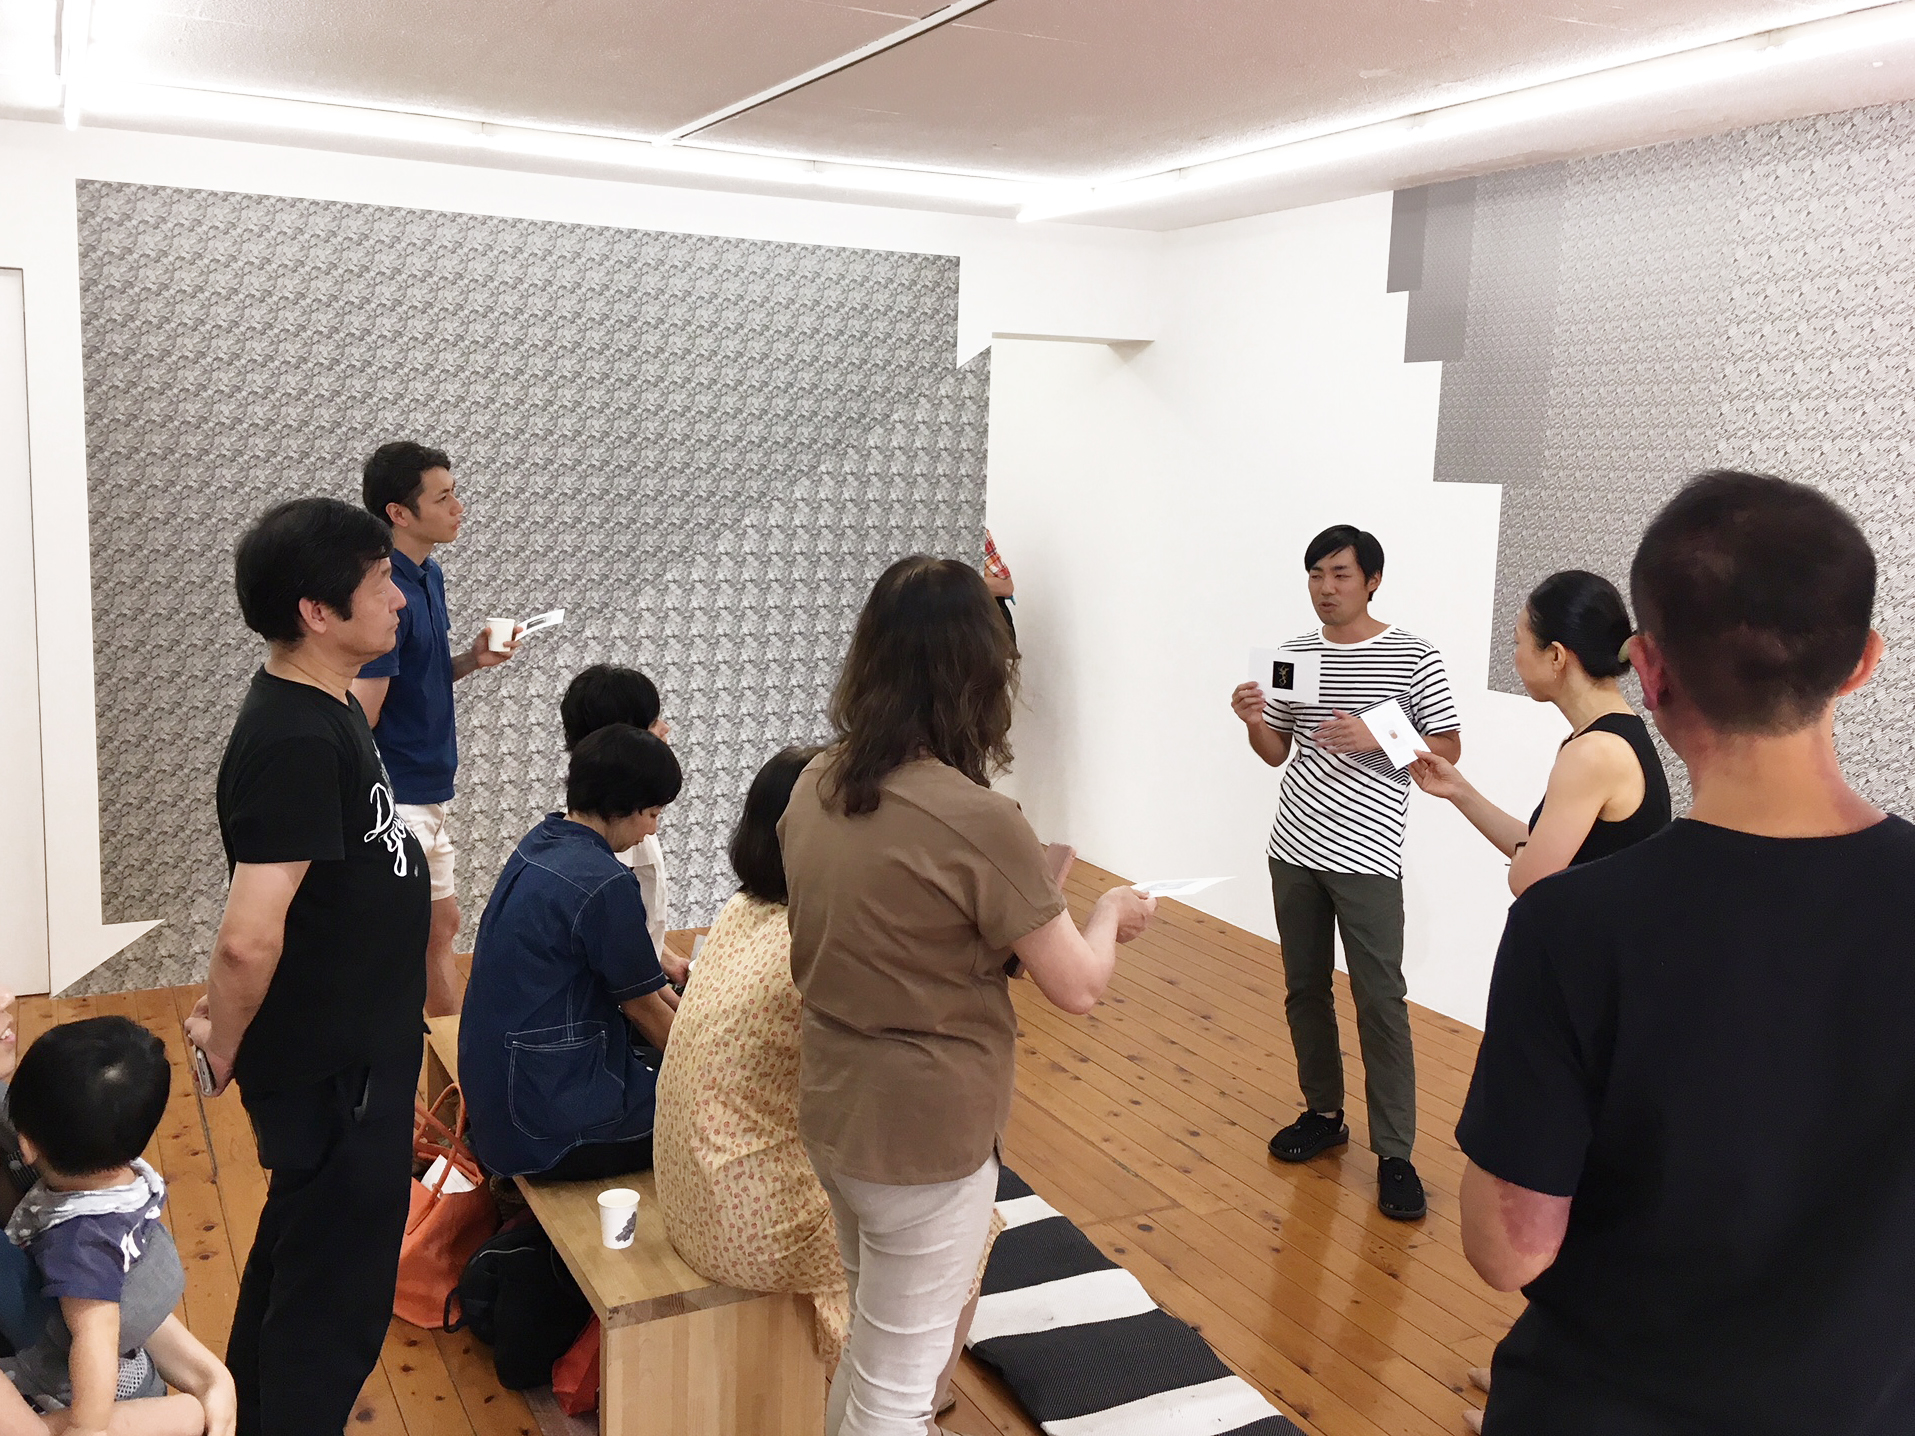 東京のアートギャラリーハギワラプロジェクツで開催された松延総司の小田川悠によるアートイベント対話型鑑賞会